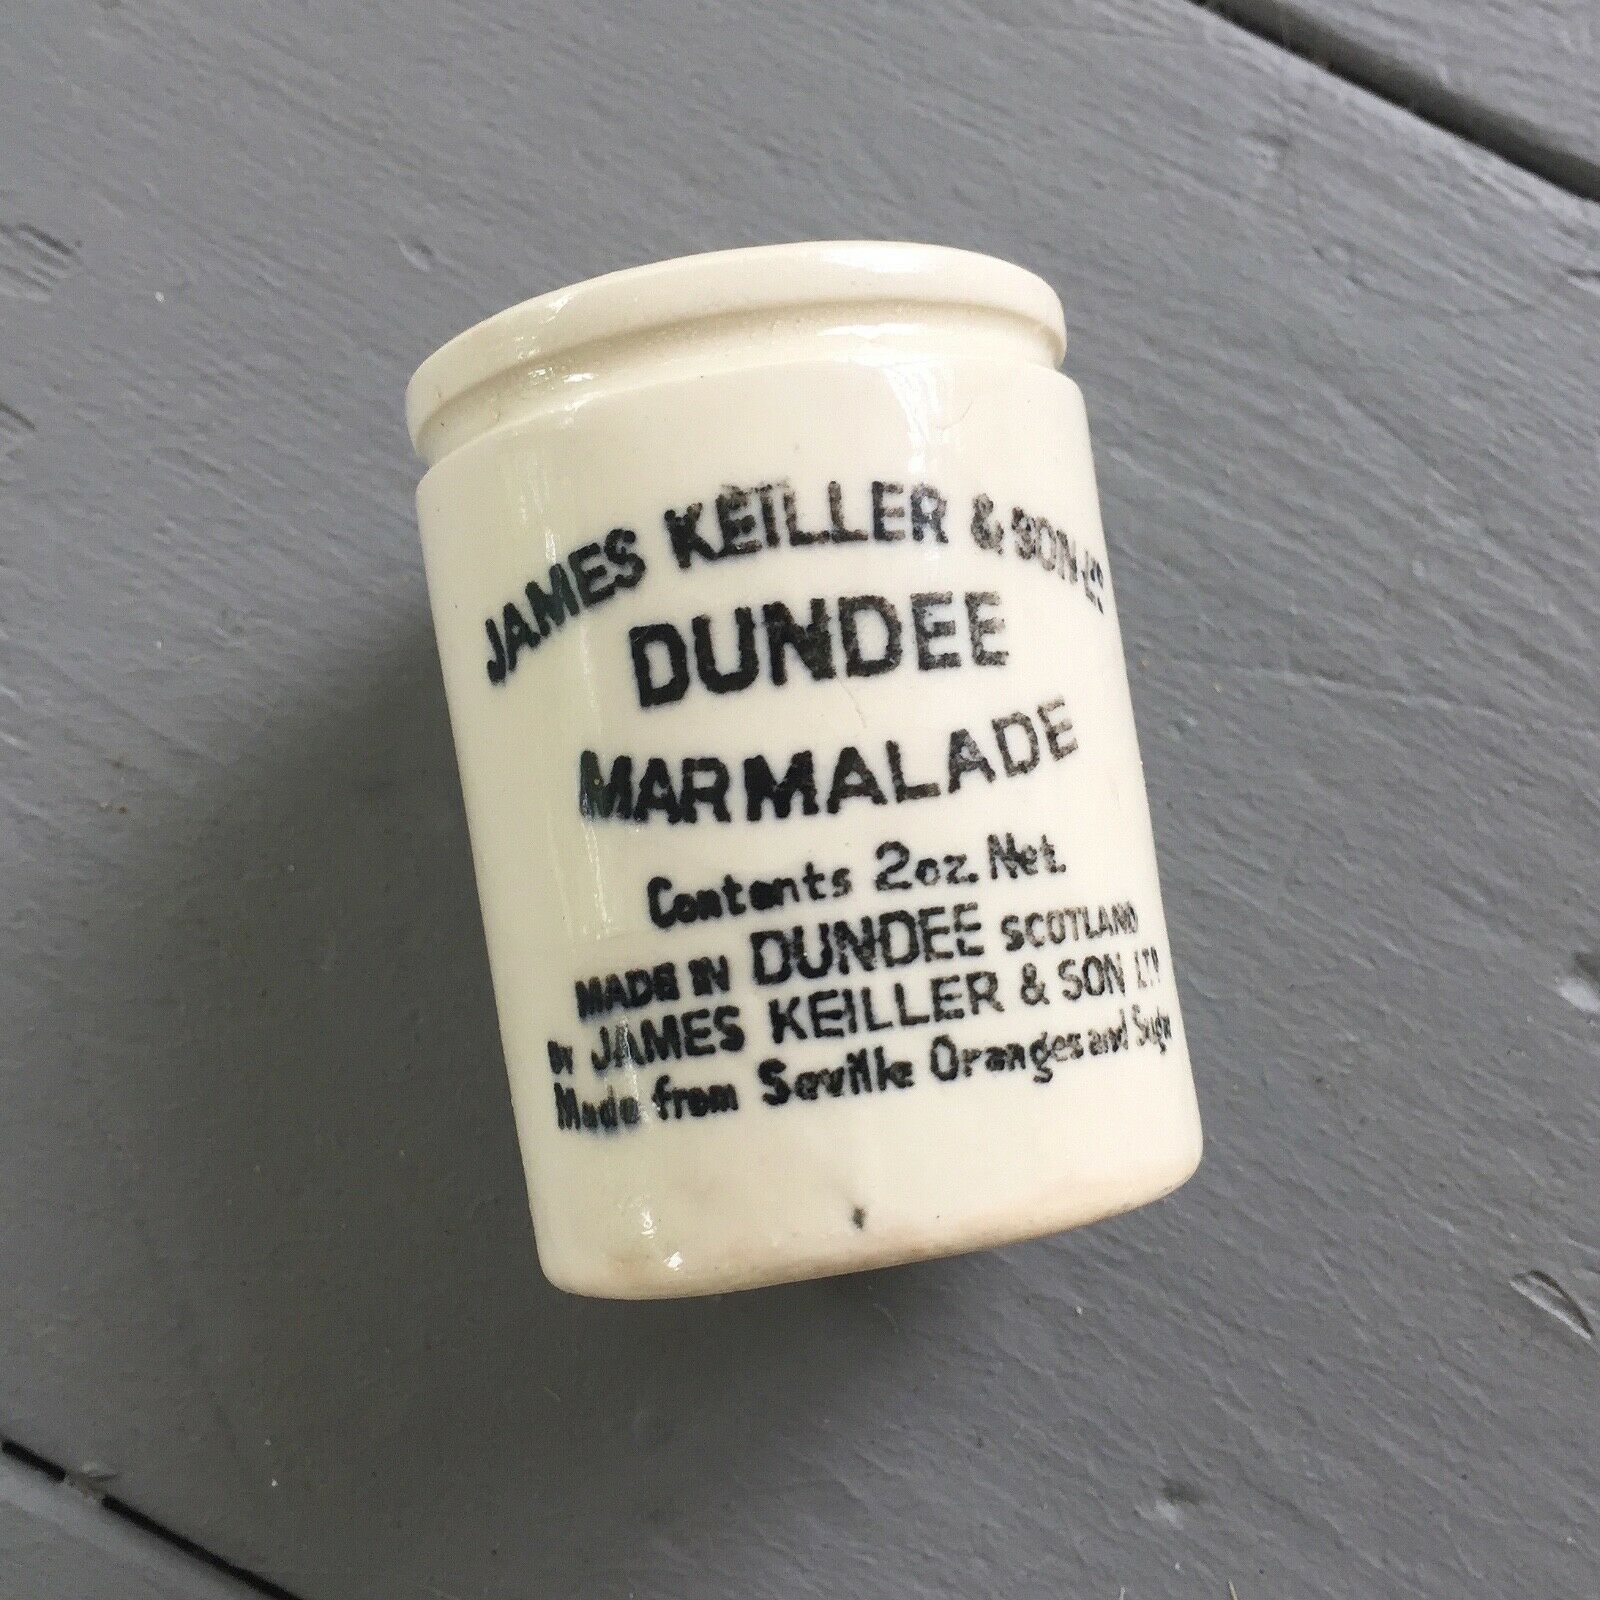 James Keiller & Son - Mini 2oz 2.25" Marmalade Crock Jar - Dundee Scotland